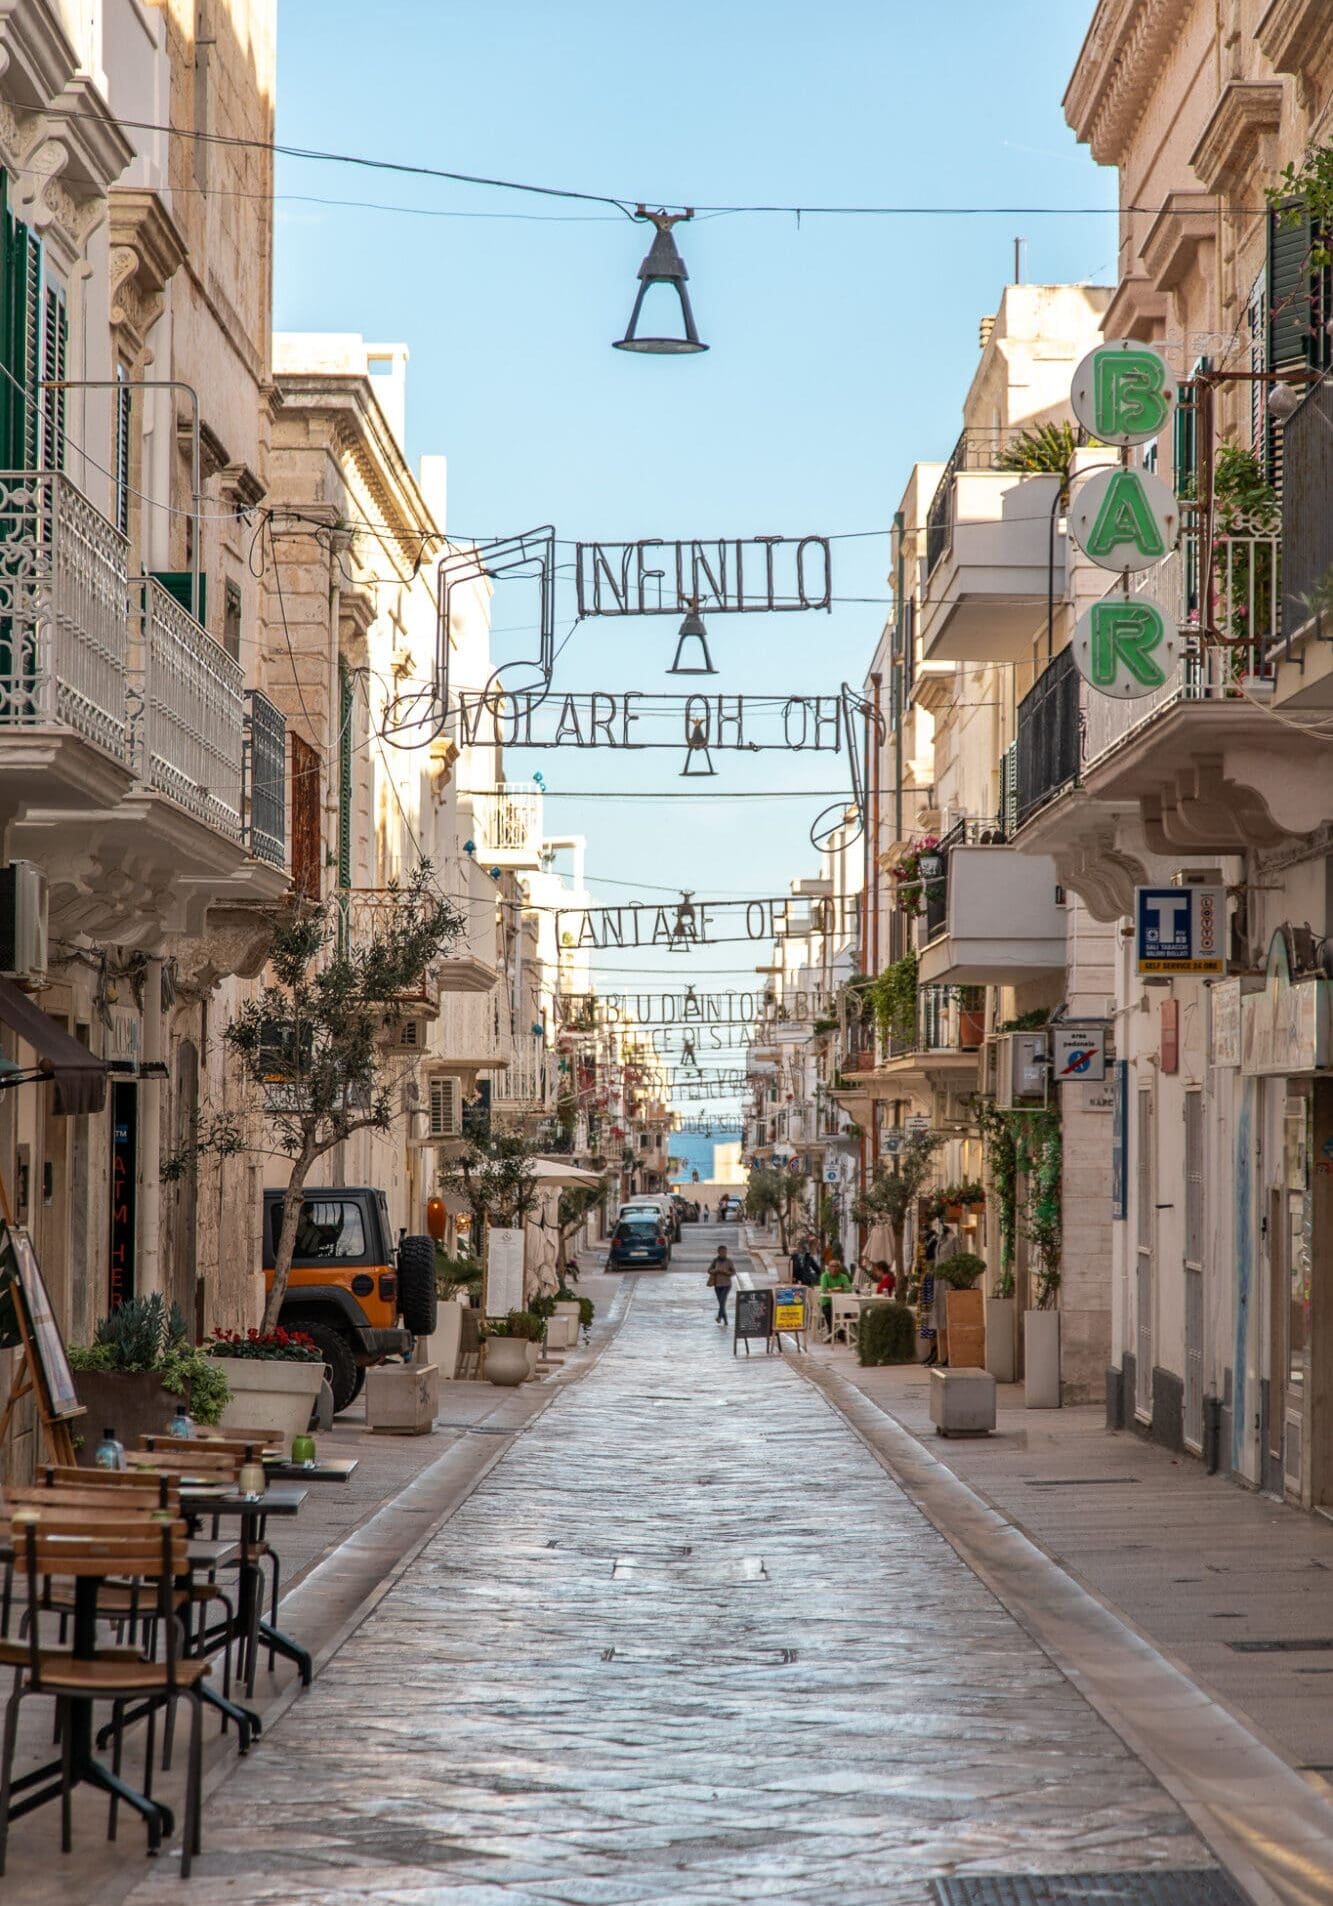 Streets of Polignano a Mare, Puglia Italy Travel Guide